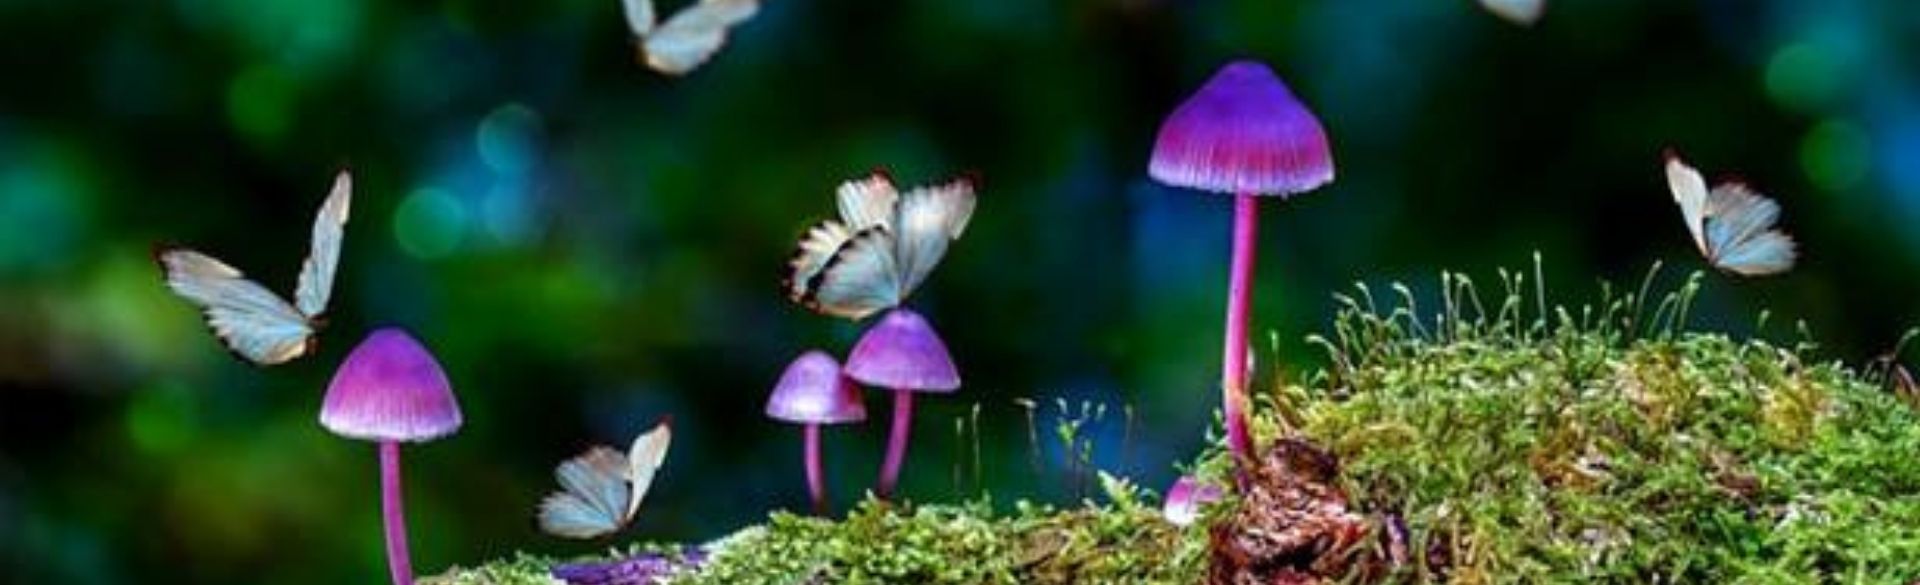 Butterflies flying near purple mushrooms on a lush green backdrop